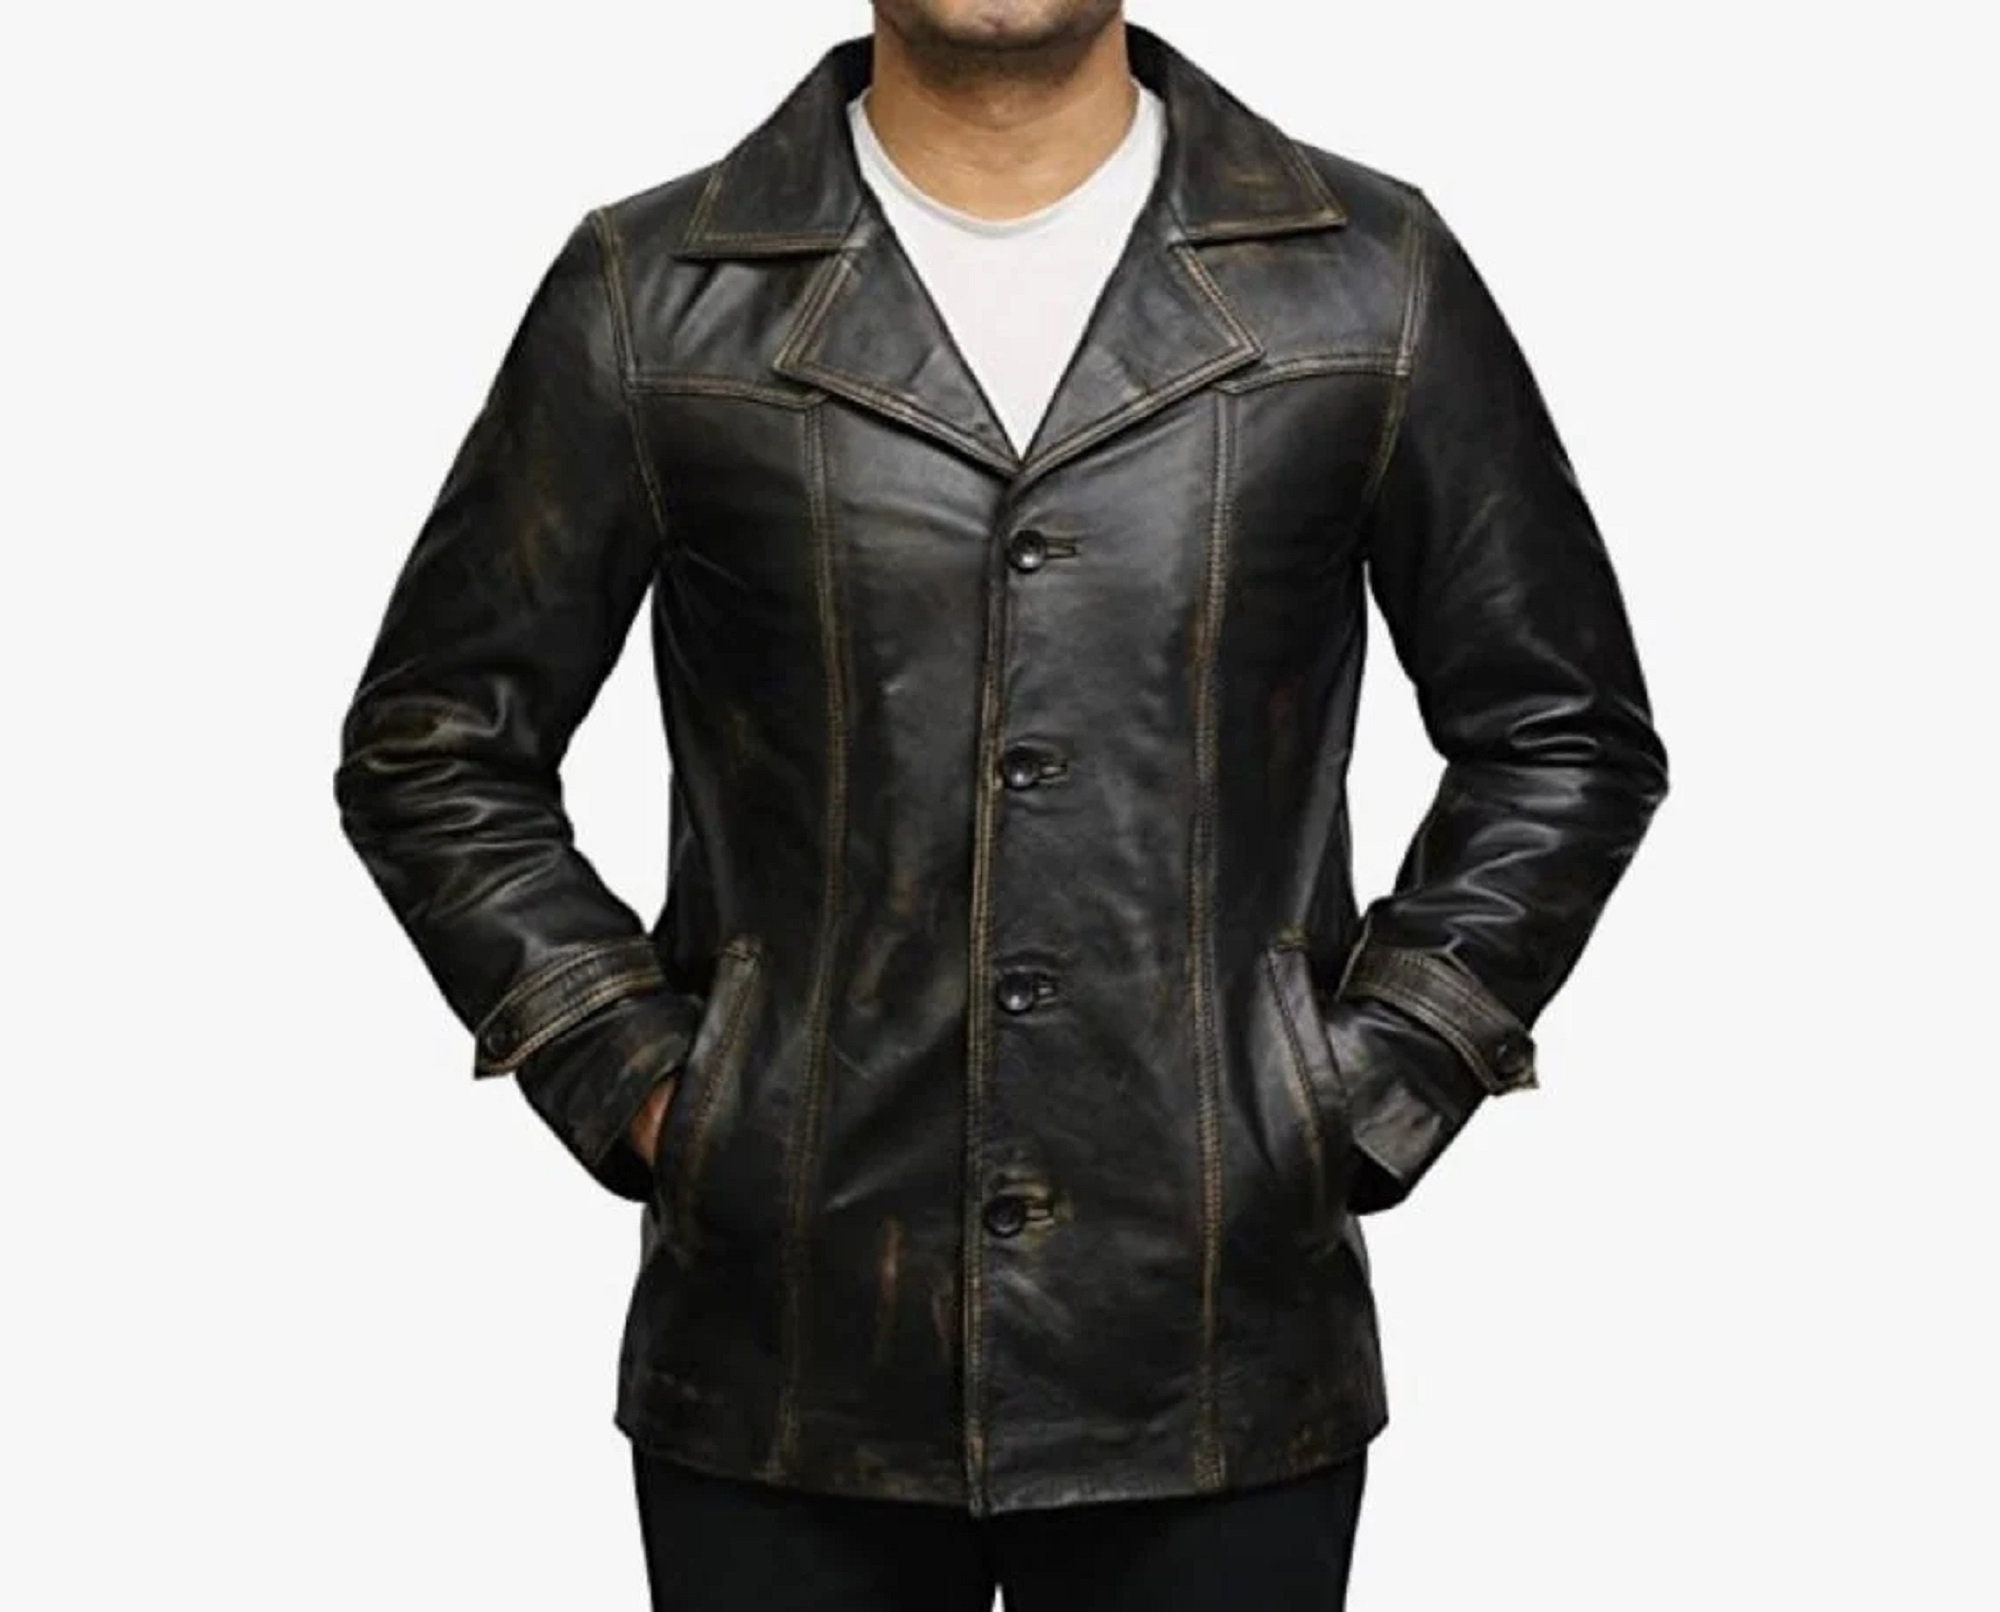 STOREJEES men's biker style vintage black leather jacket